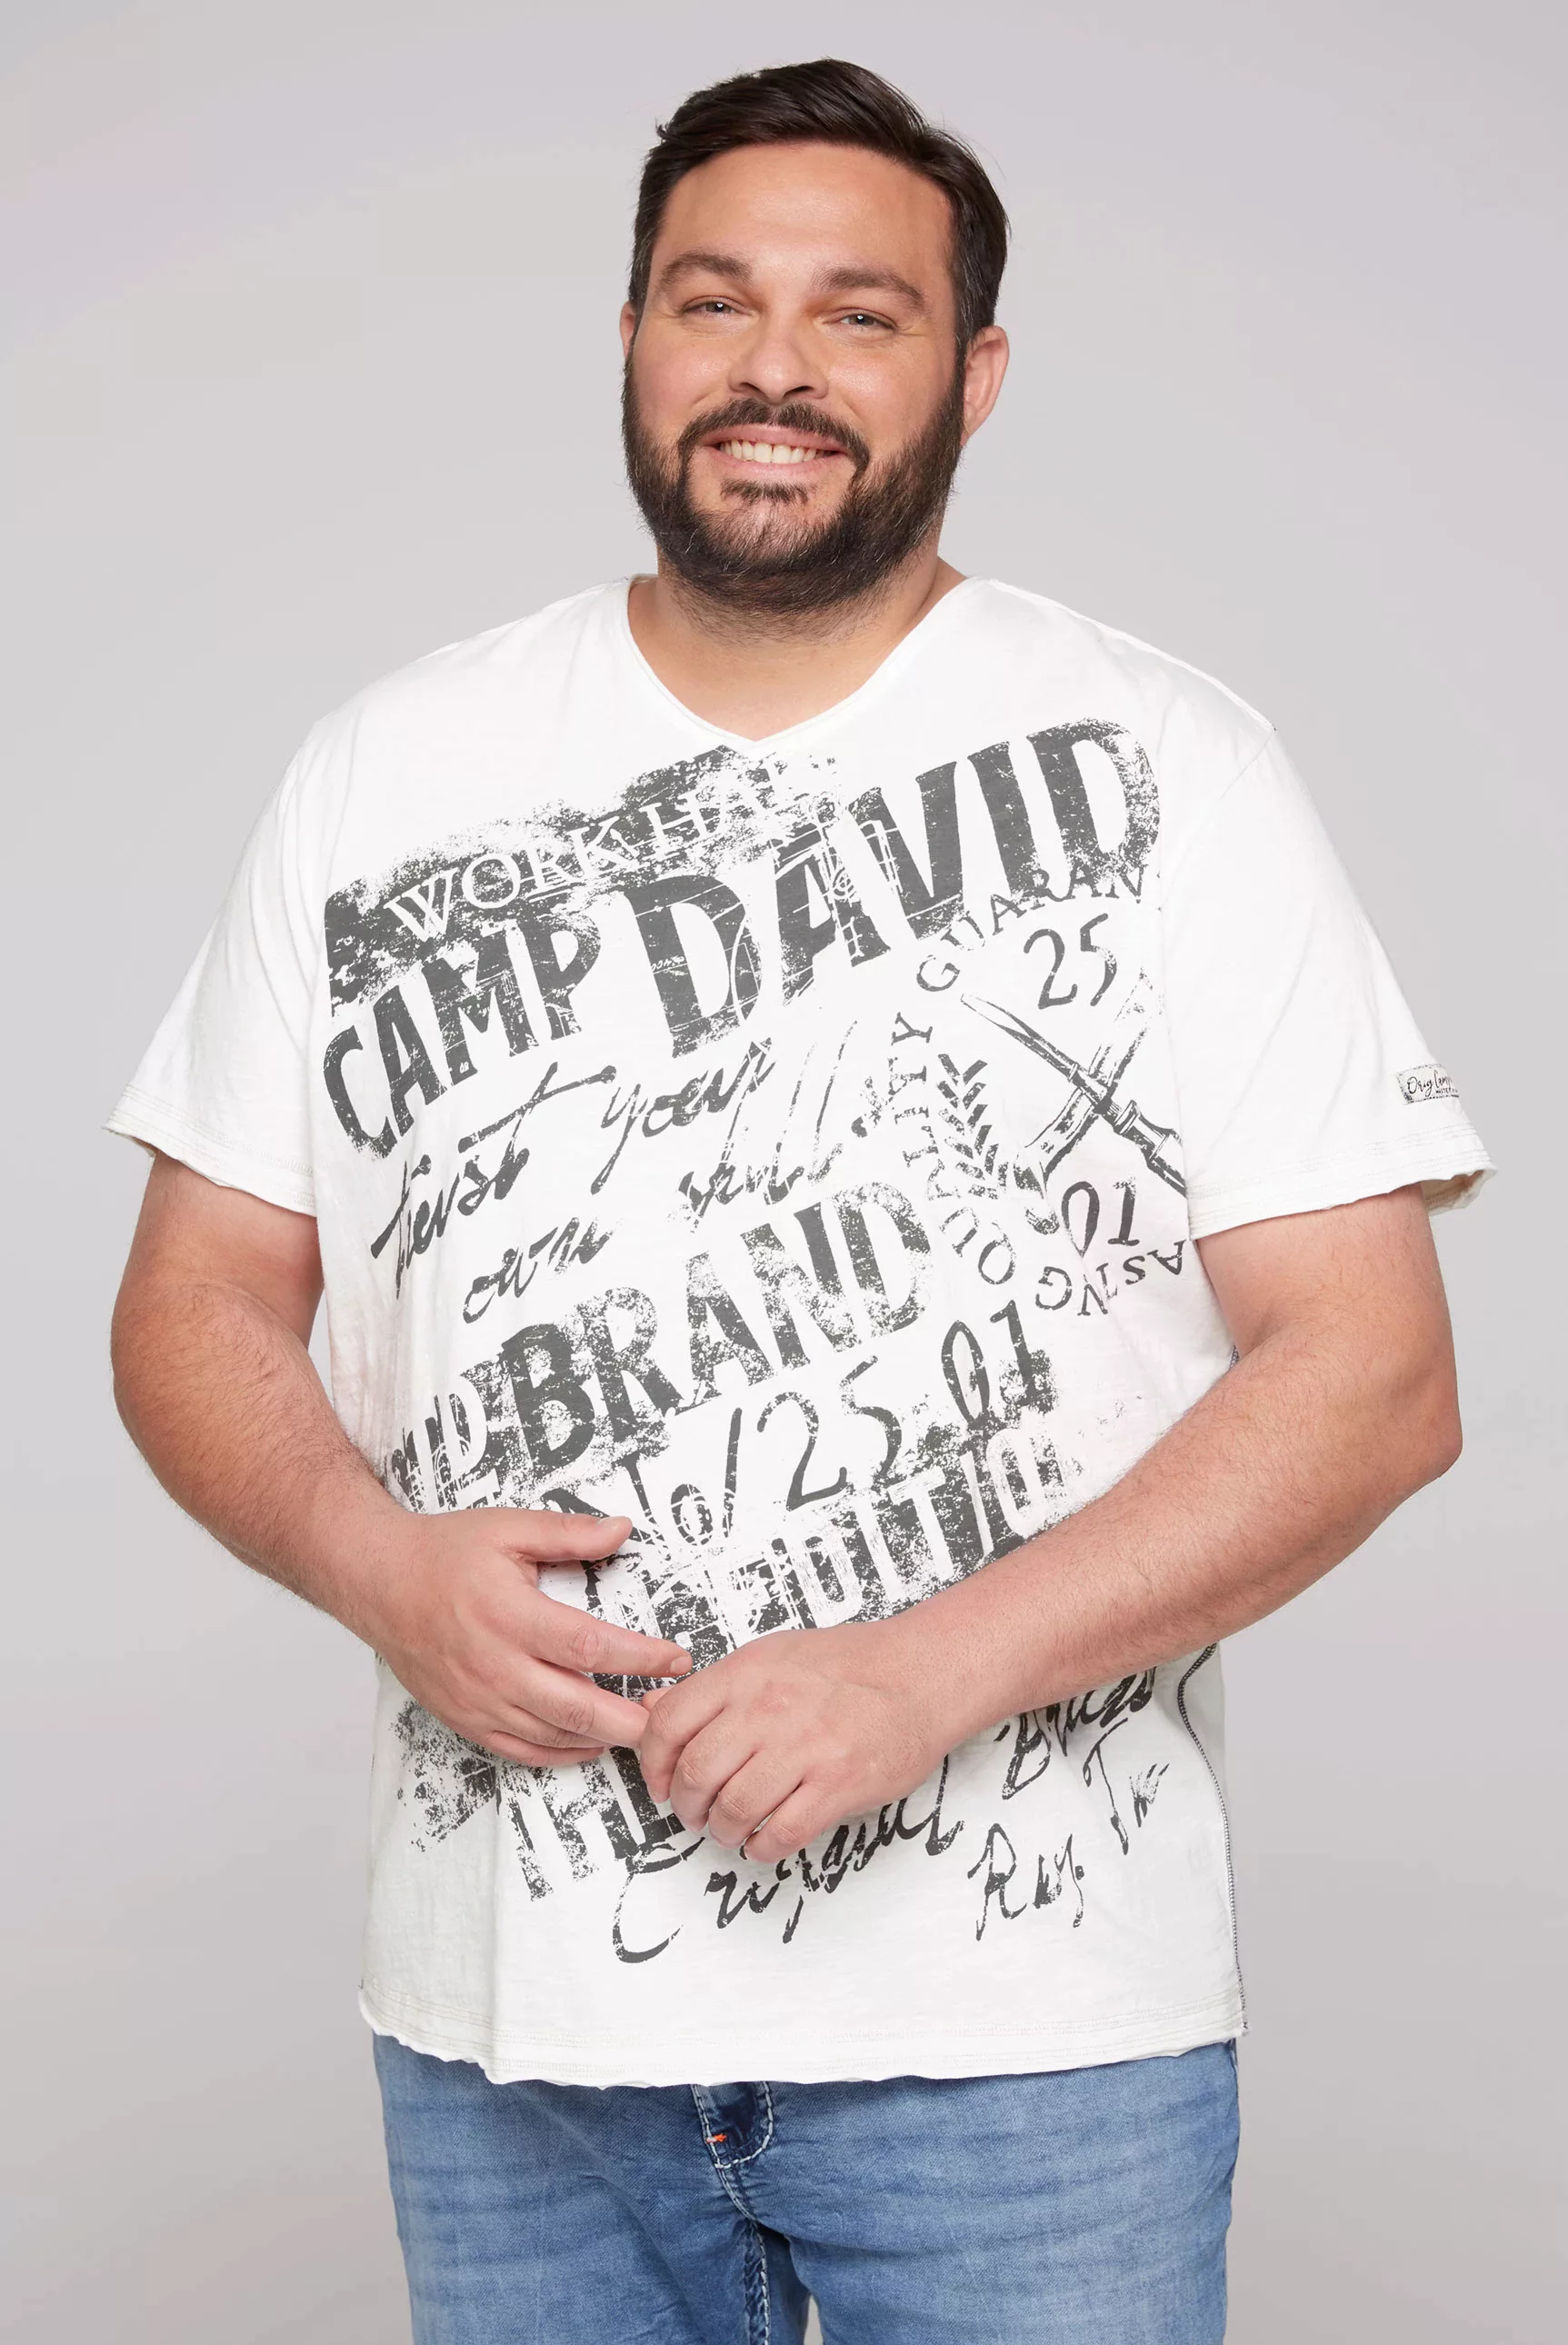 CAMP DAVID T-Shirt mit Logo-Bestickung am Ärmel günstig online kaufen